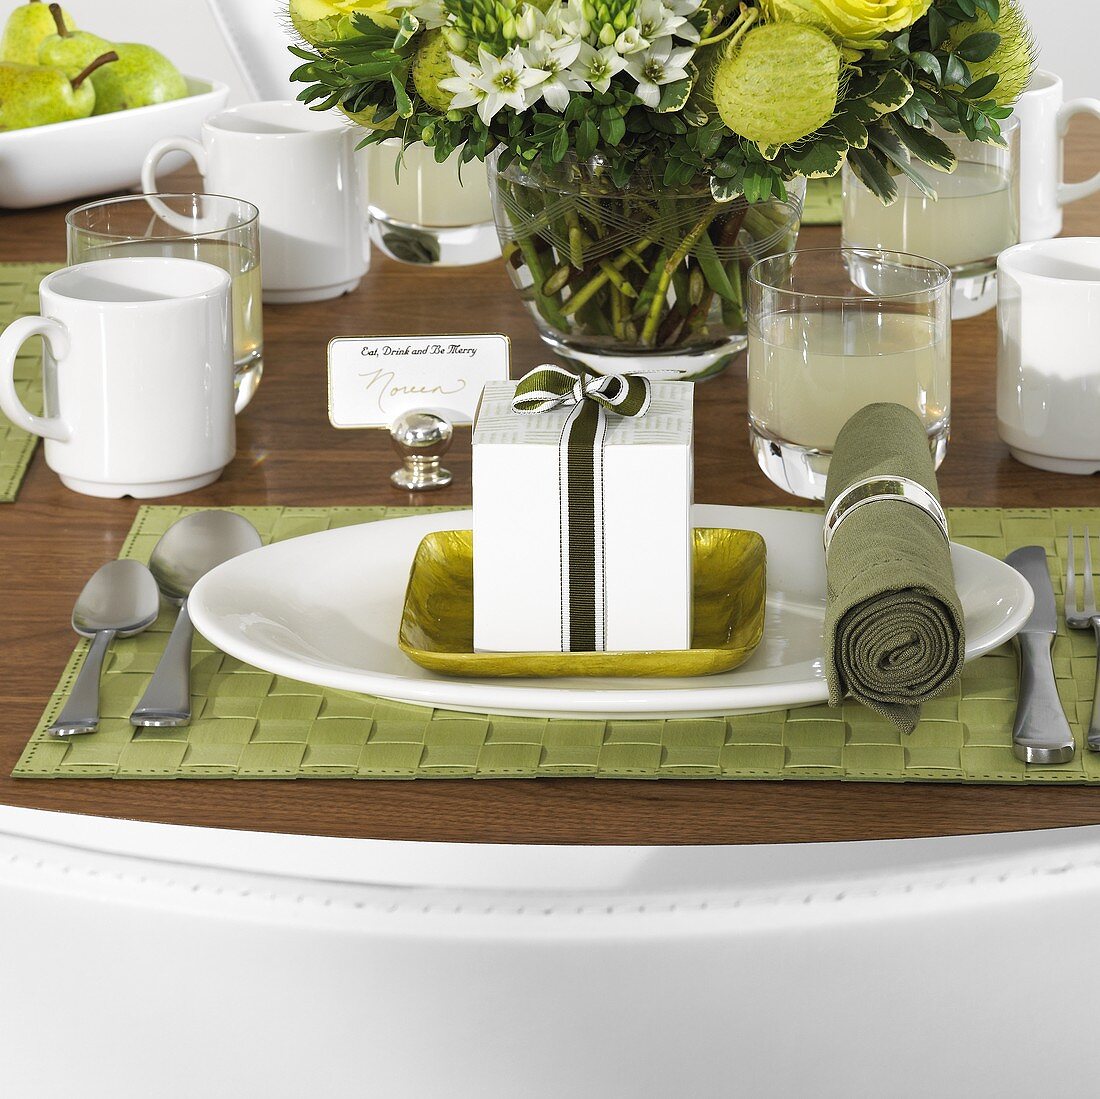 Gedeckter Tisch in Grün und Weiß mit Blumen und Limonade